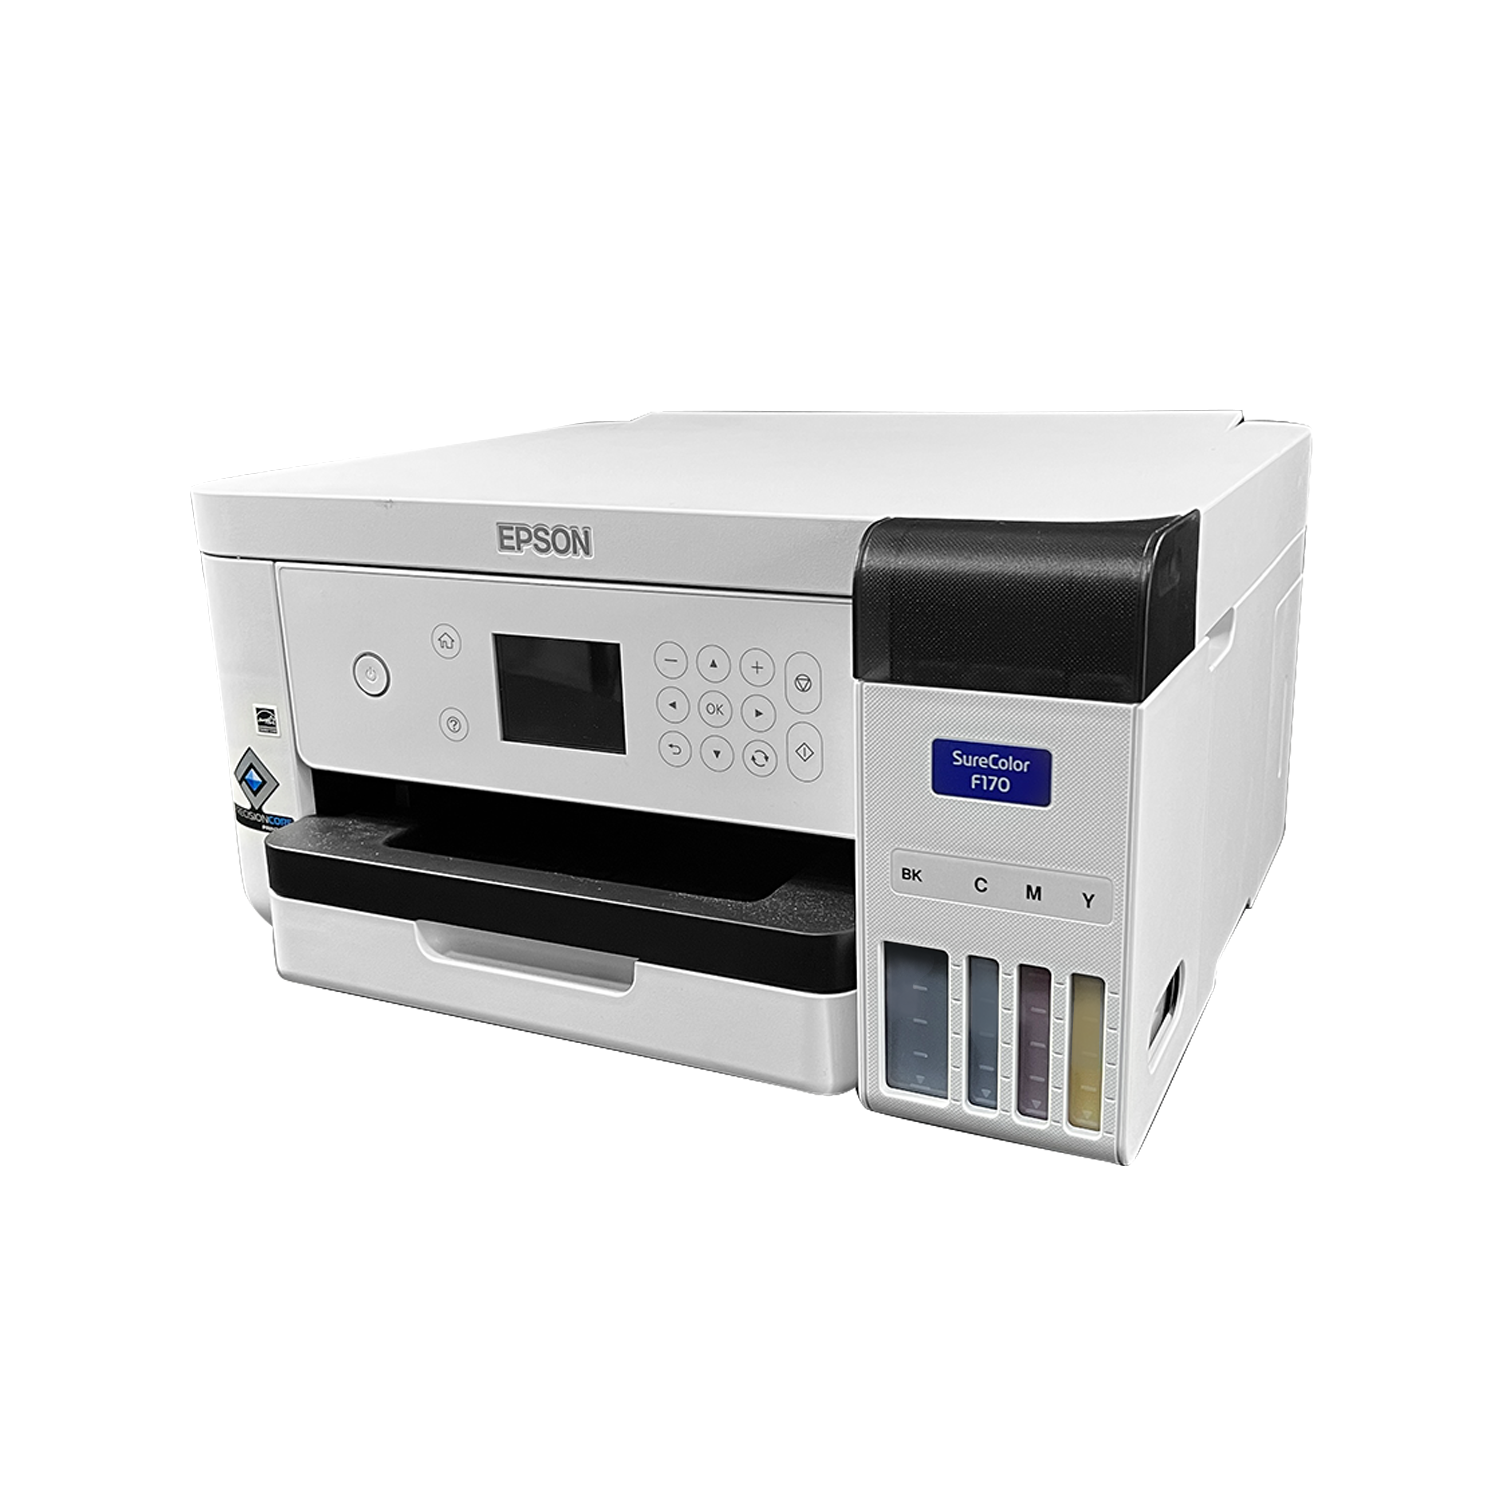 Epson Surecolor F170 Dye Sublimation Printer